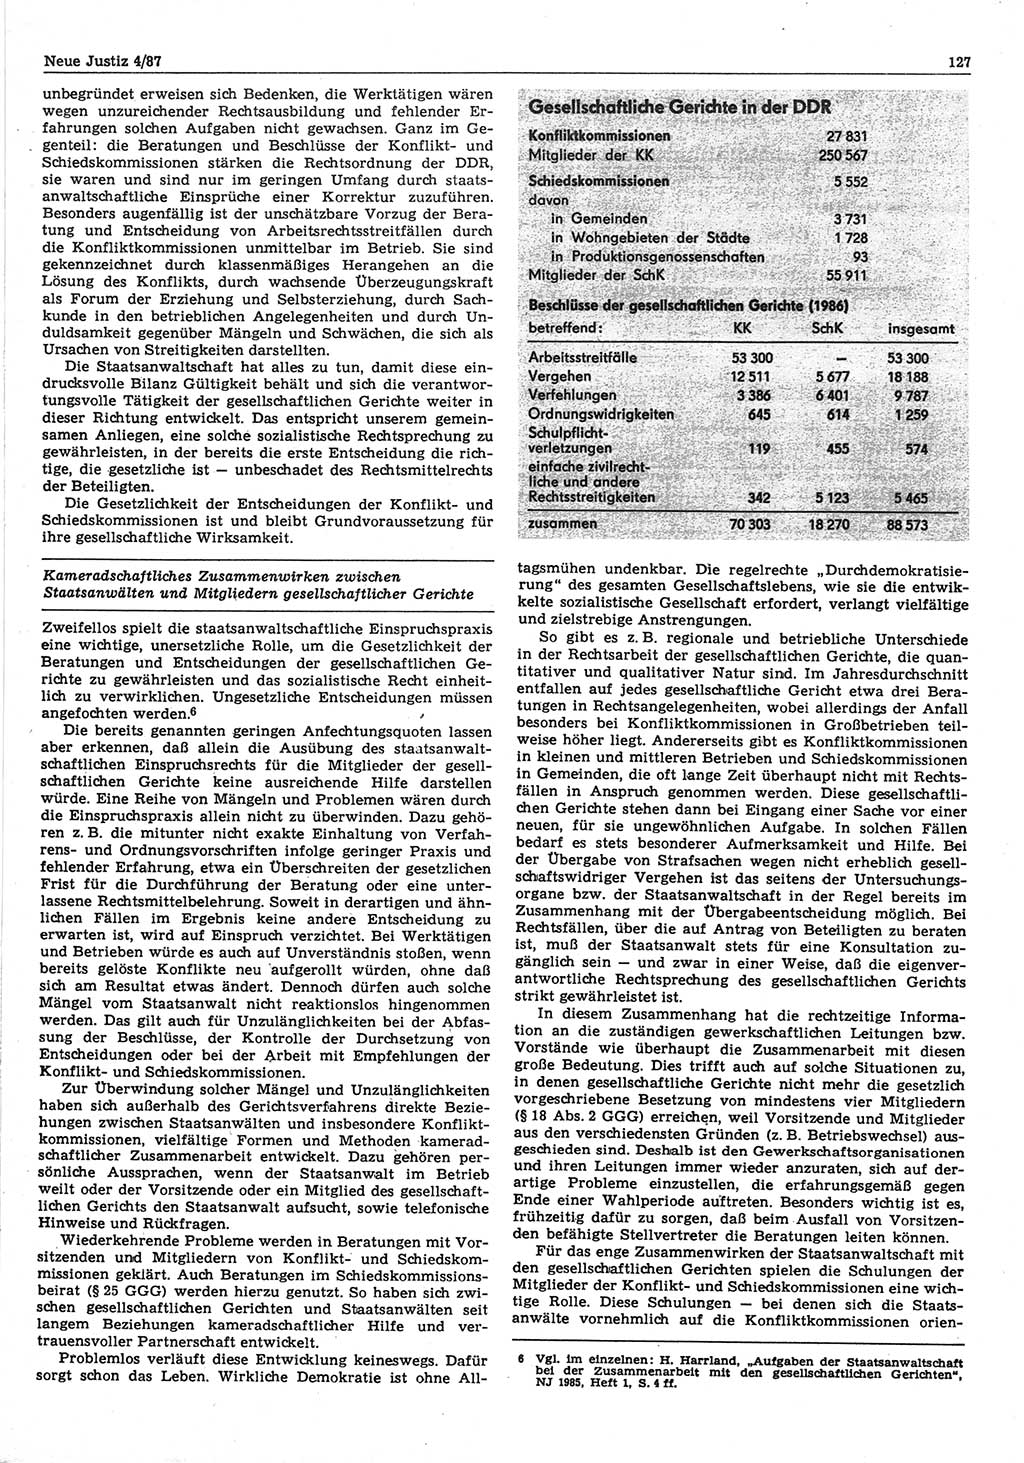 Neue Justiz (NJ), Zeitschrift für sozialistisches Recht und Gesetzlichkeit [Deutsche Demokratische Republik (DDR)], 41. Jahrgang 1987, Seite 127 (NJ DDR 1987, S. 127)